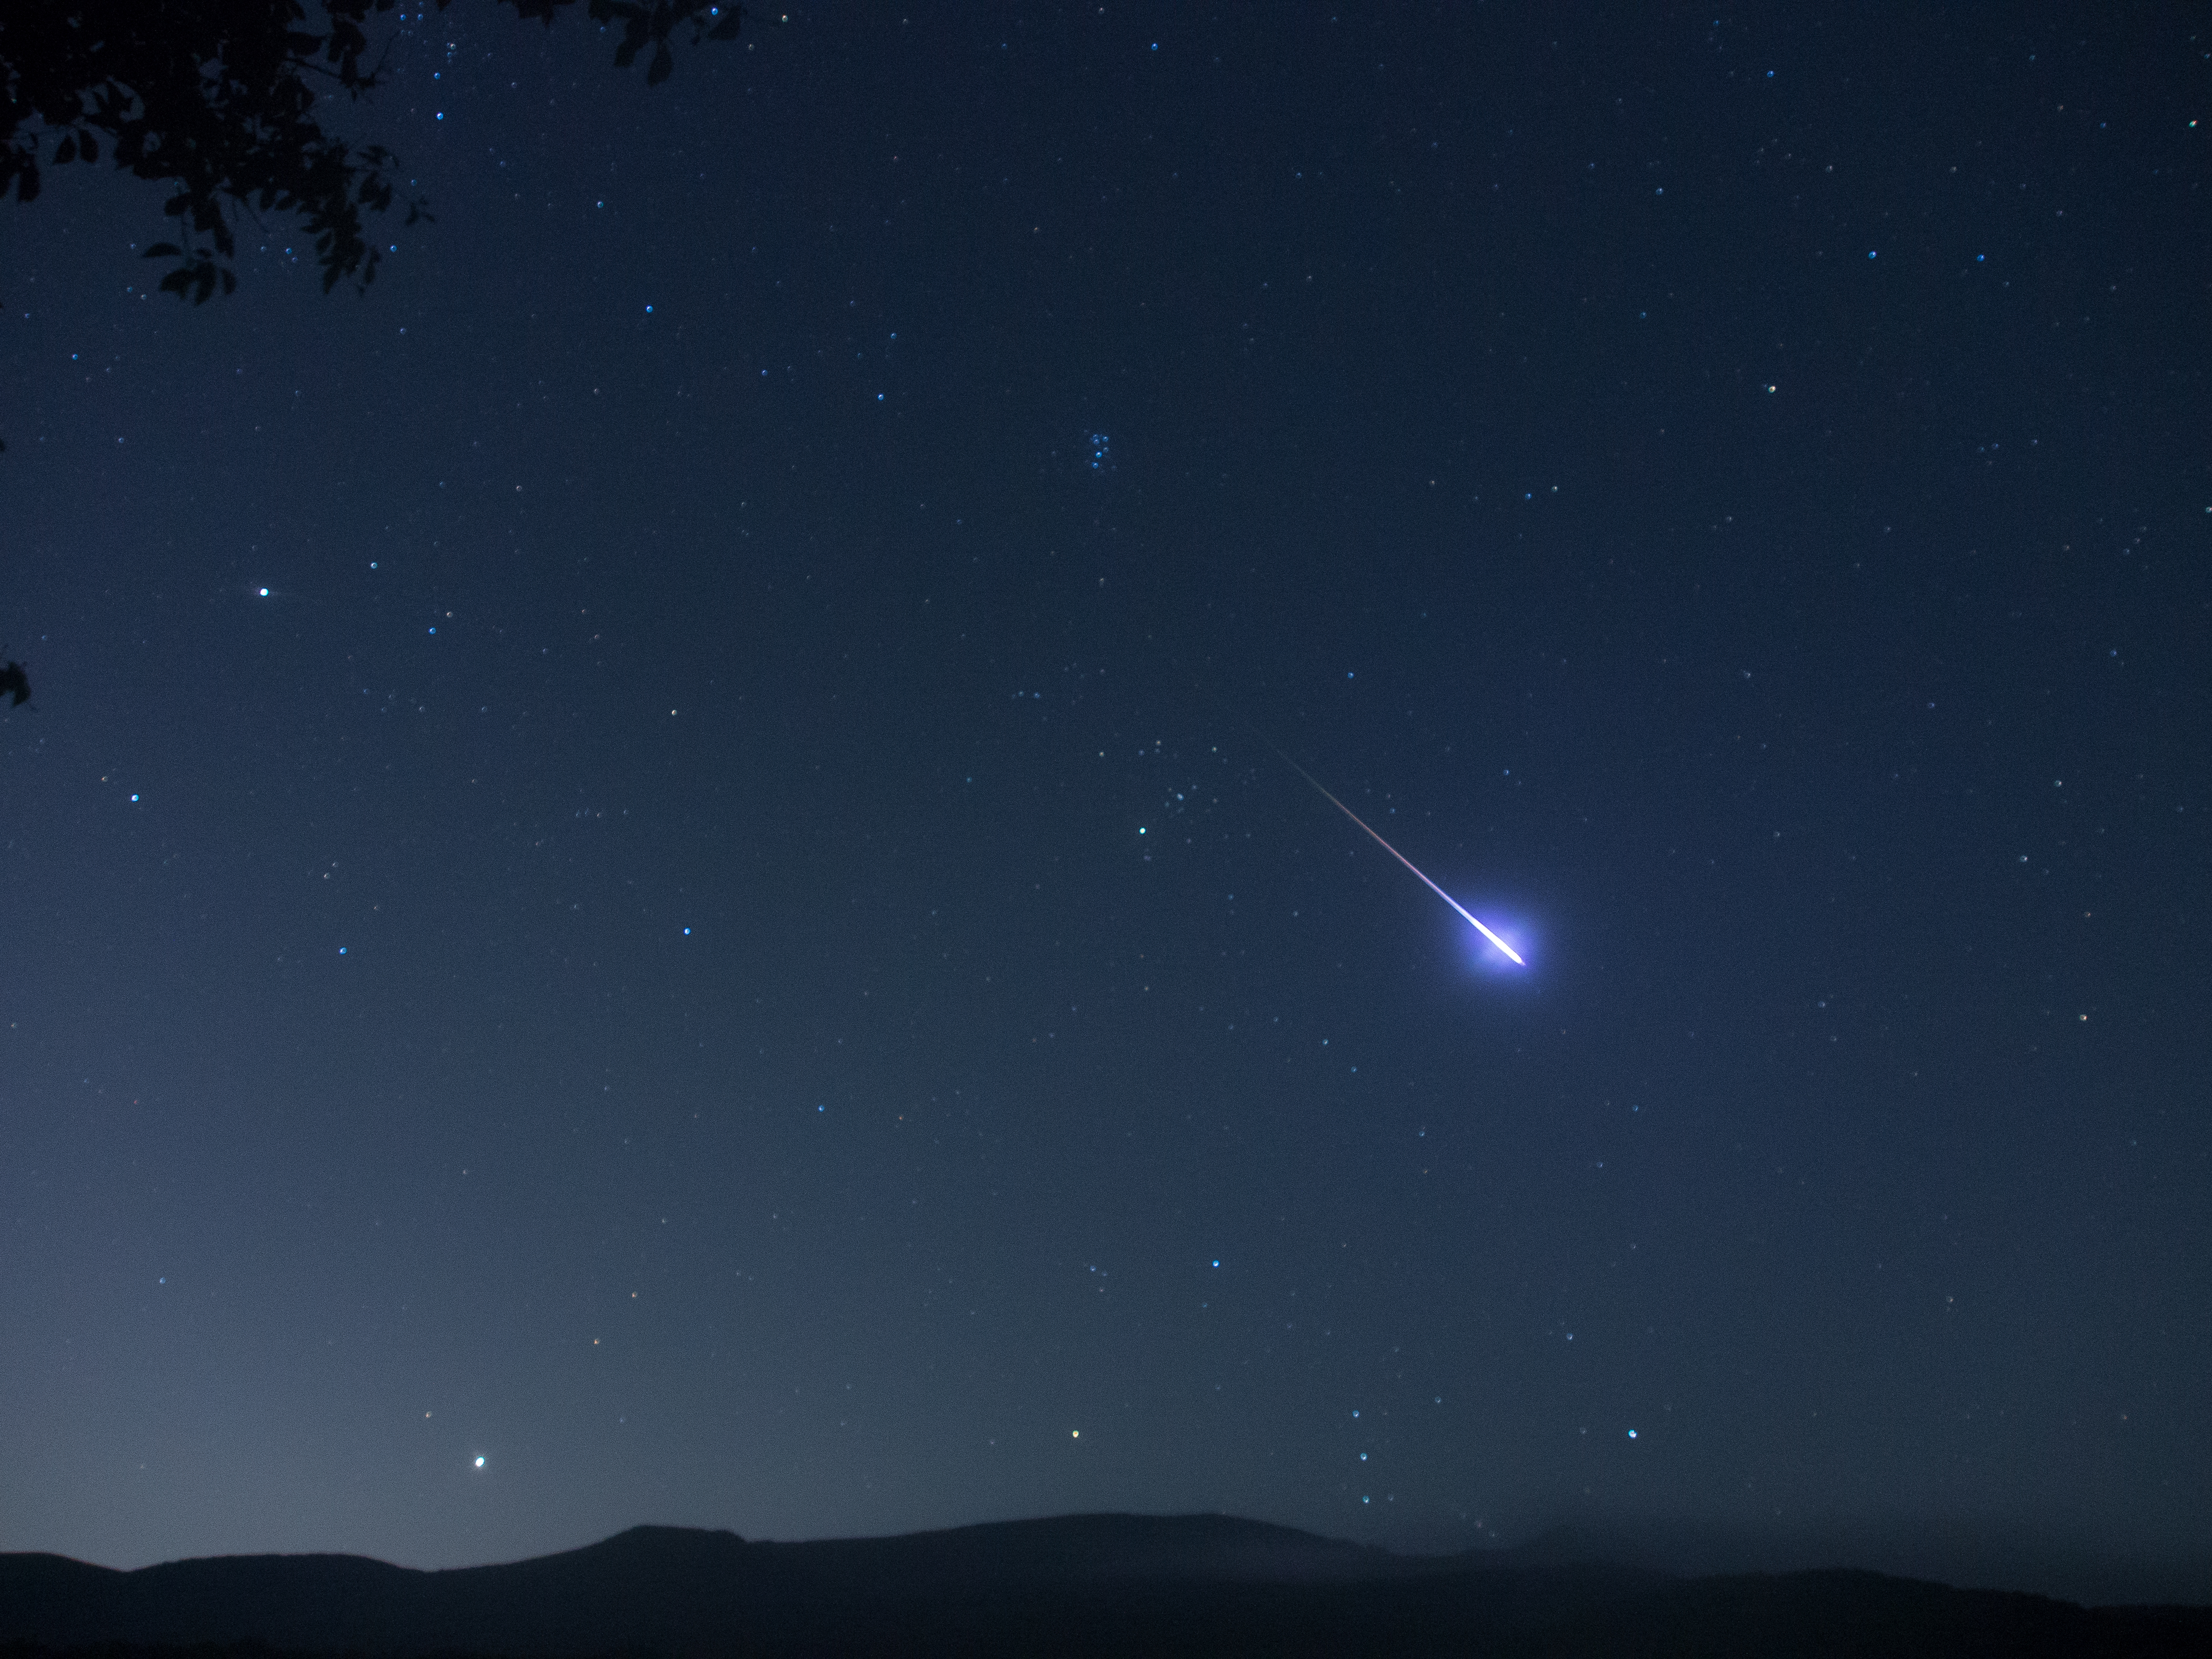 Meteor Showers - Perseid Meteor 